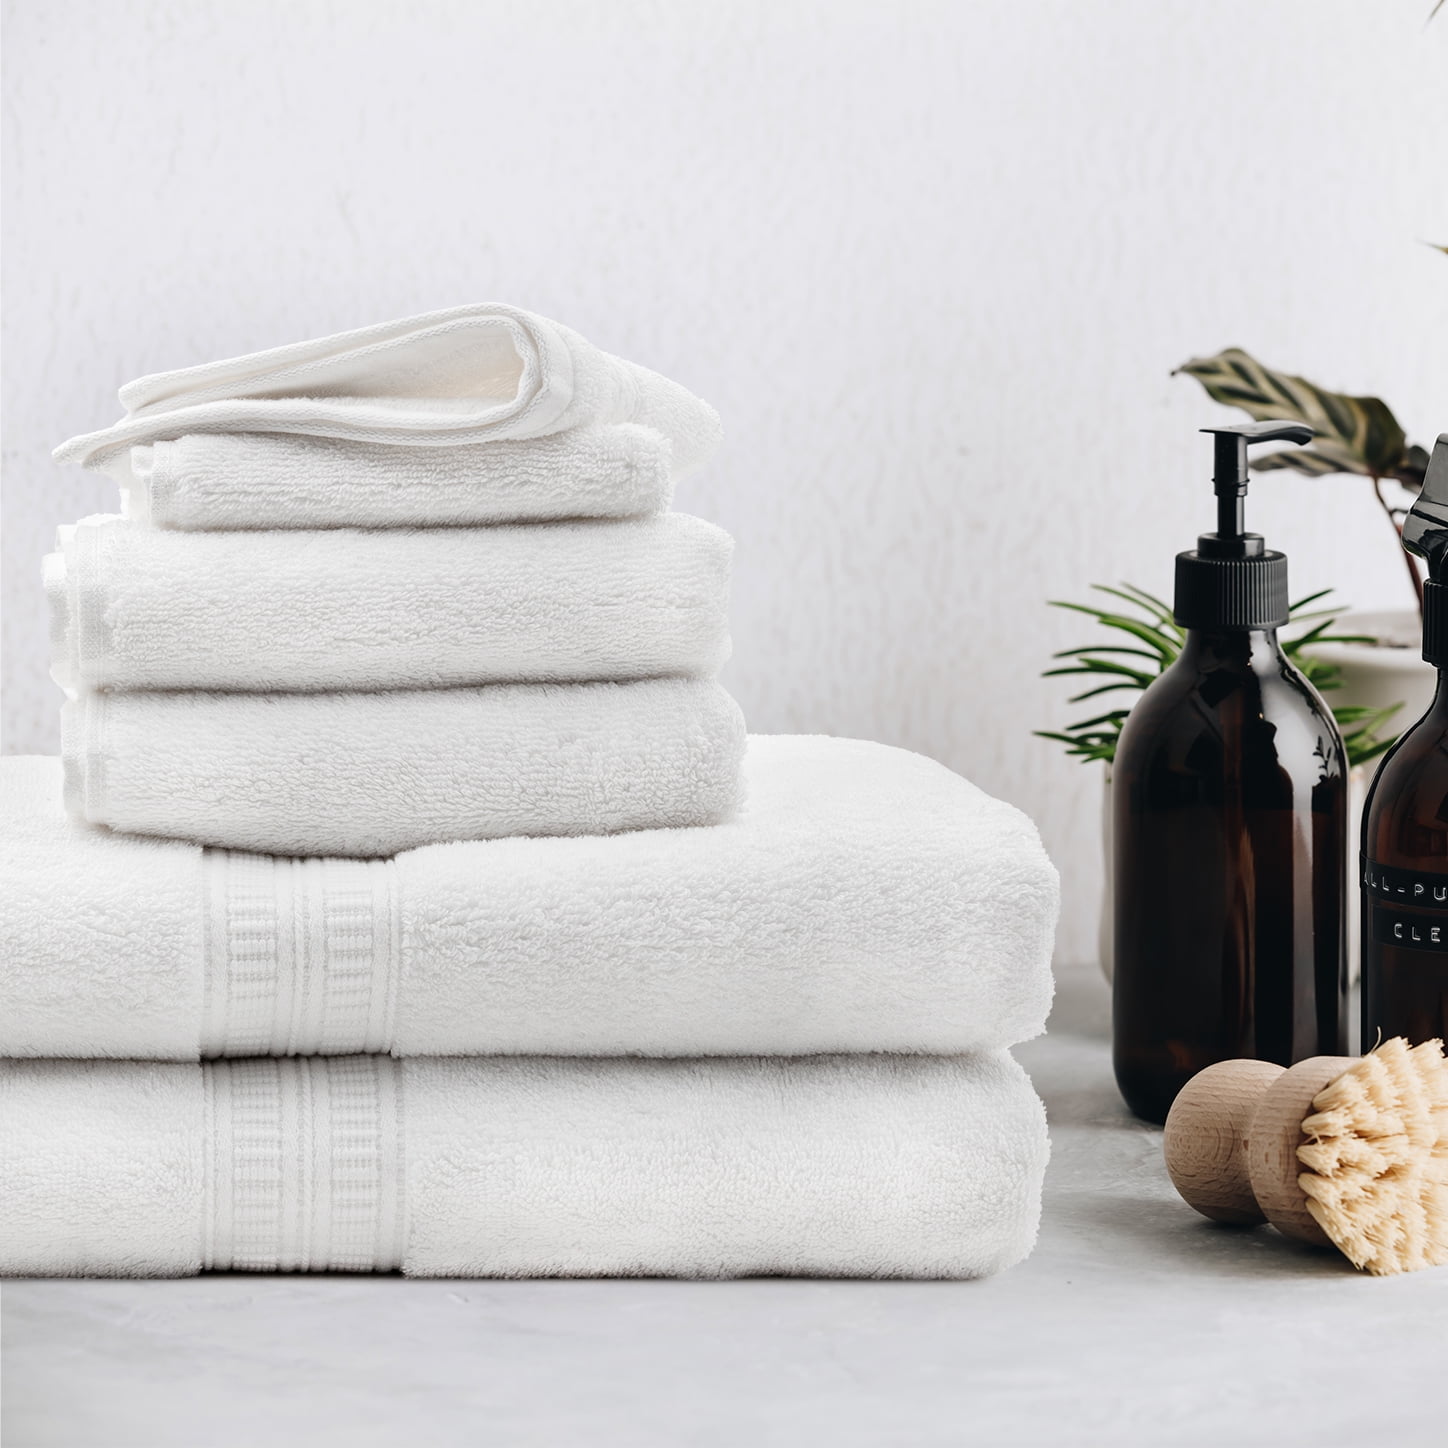 White Classic Luxury Grey Bath Sheet Towels 2 Pcs Set, Extra Large 35x70  Inch